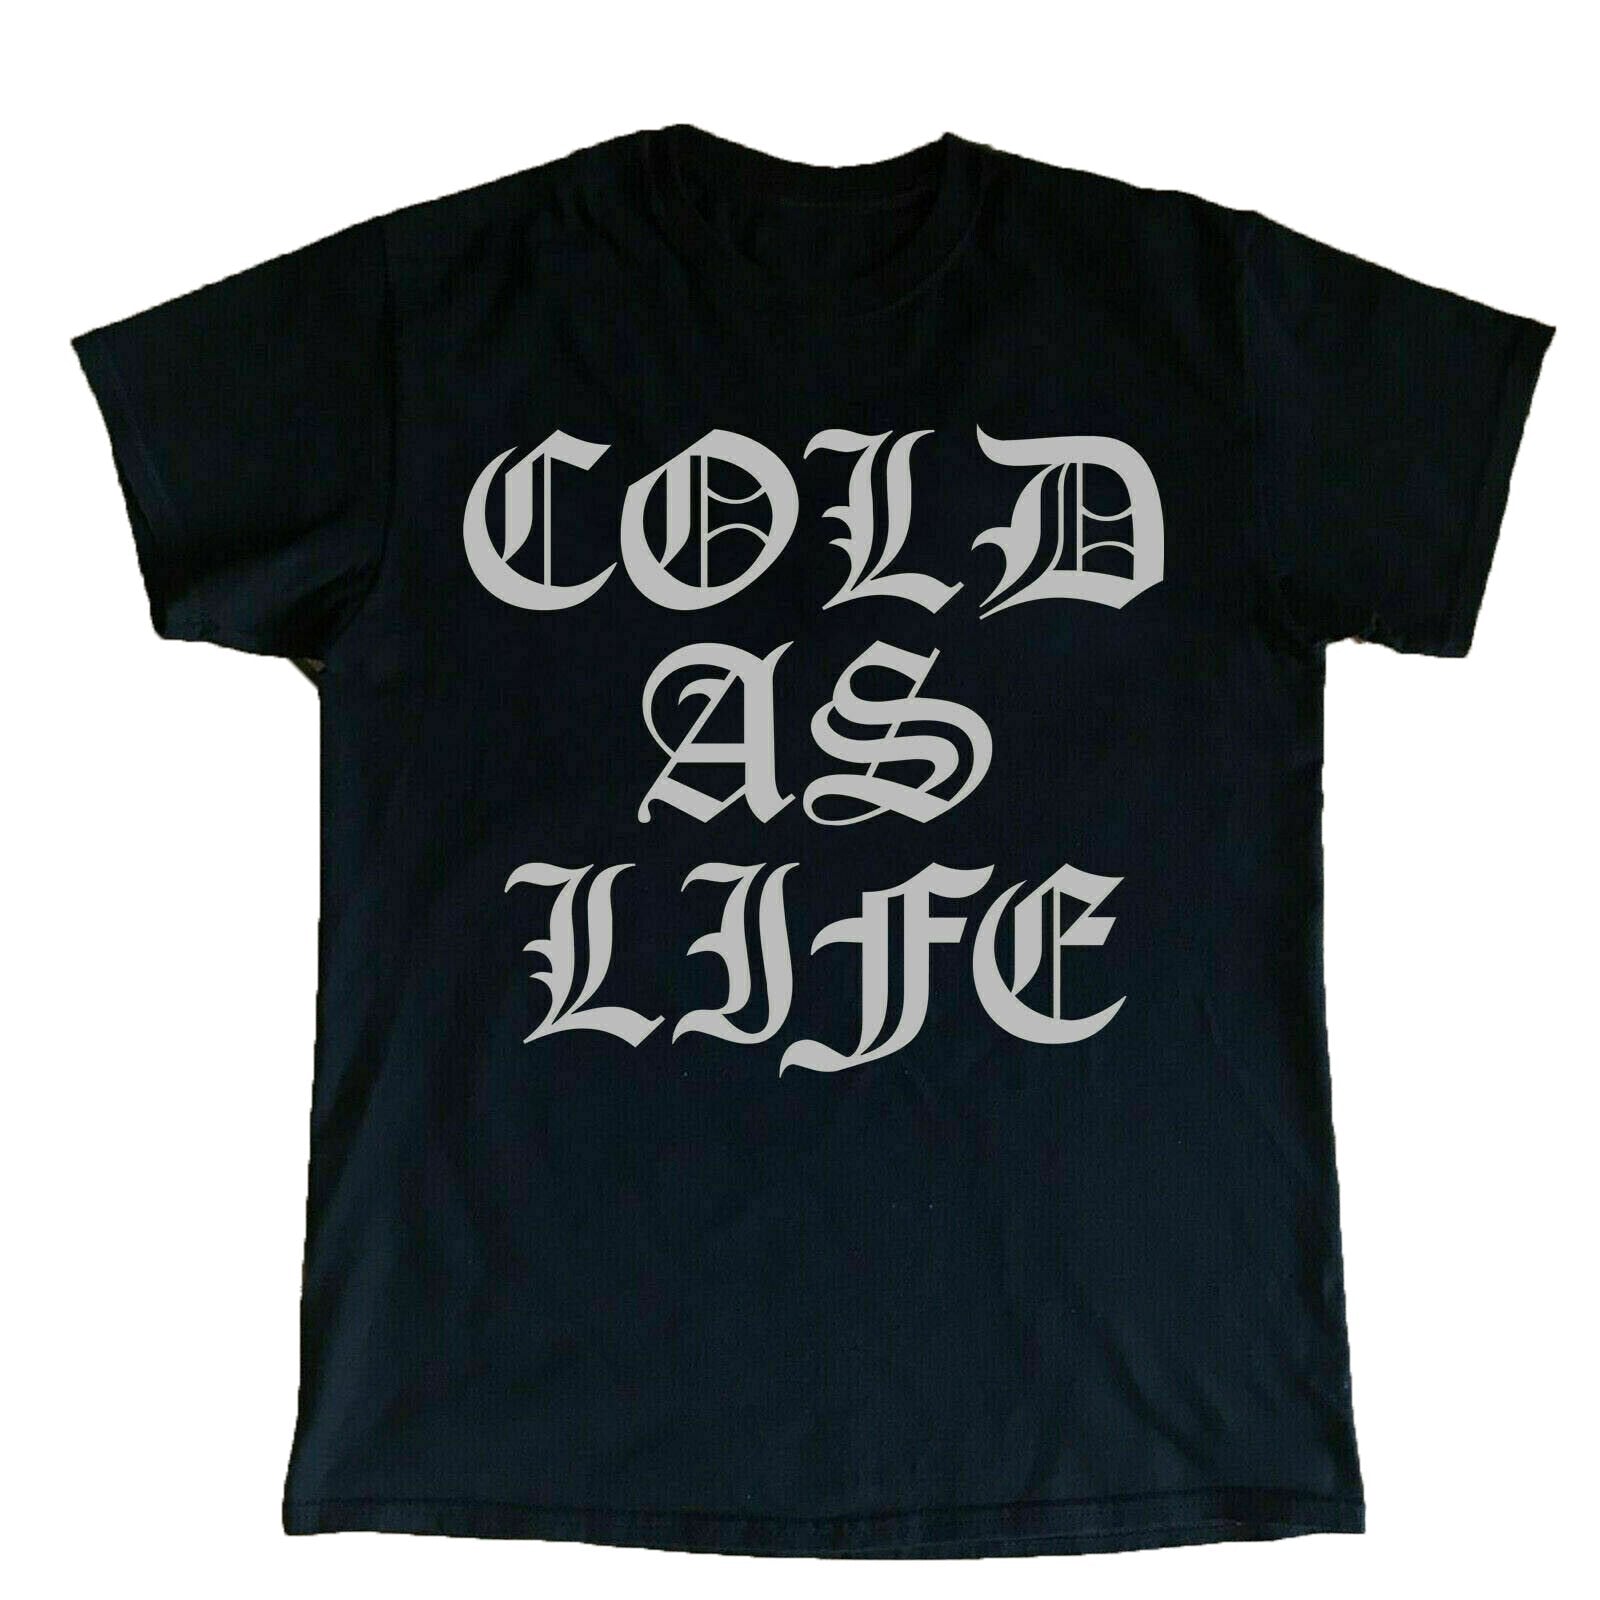 NEW Vintage Cold As Life Tour Concert Black Unisex Tshirt